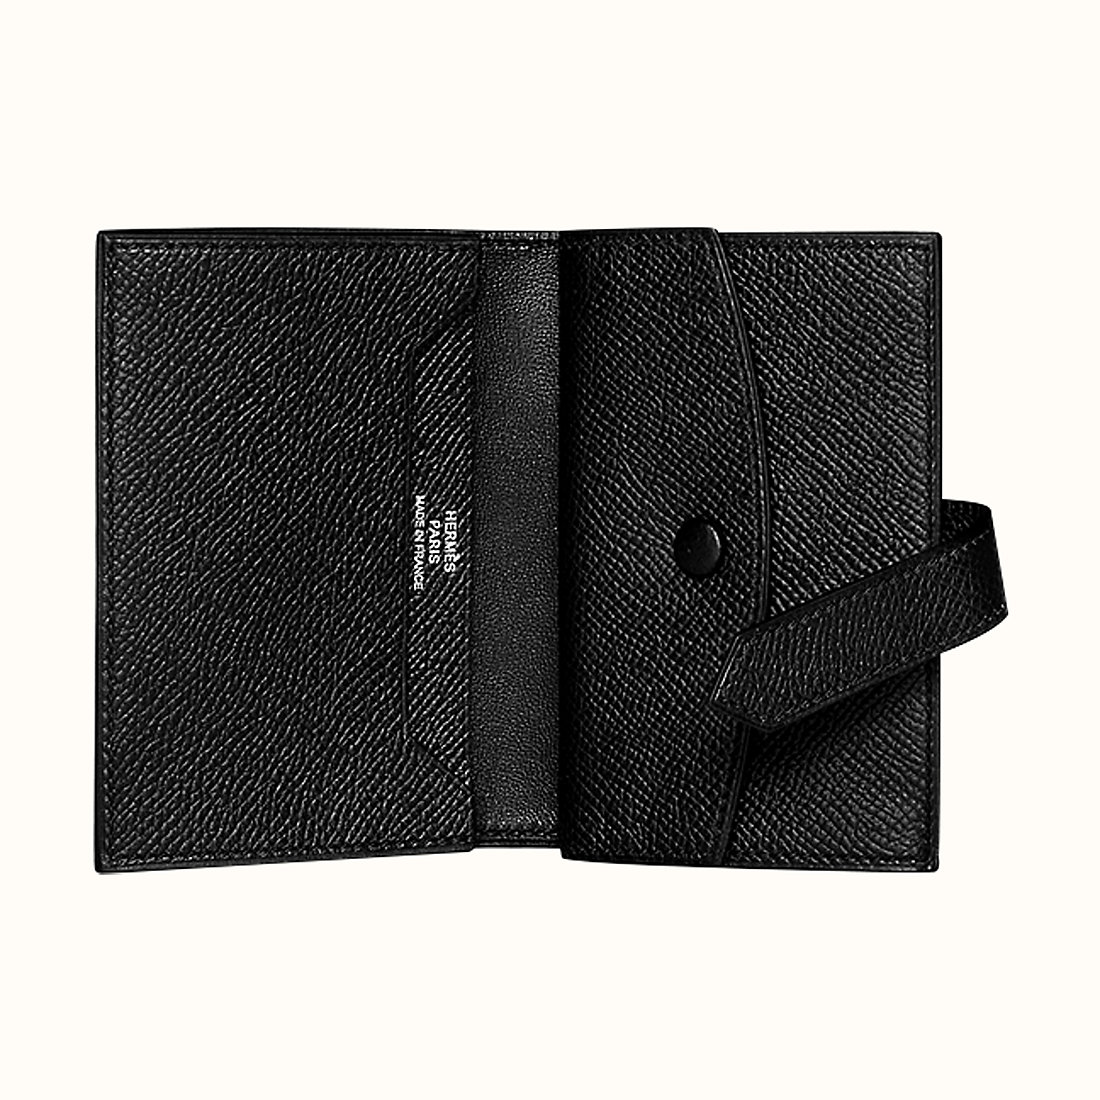 臺中市愛馬仕短款錢包 Hermes Bearn mini wallet CK89 Noir